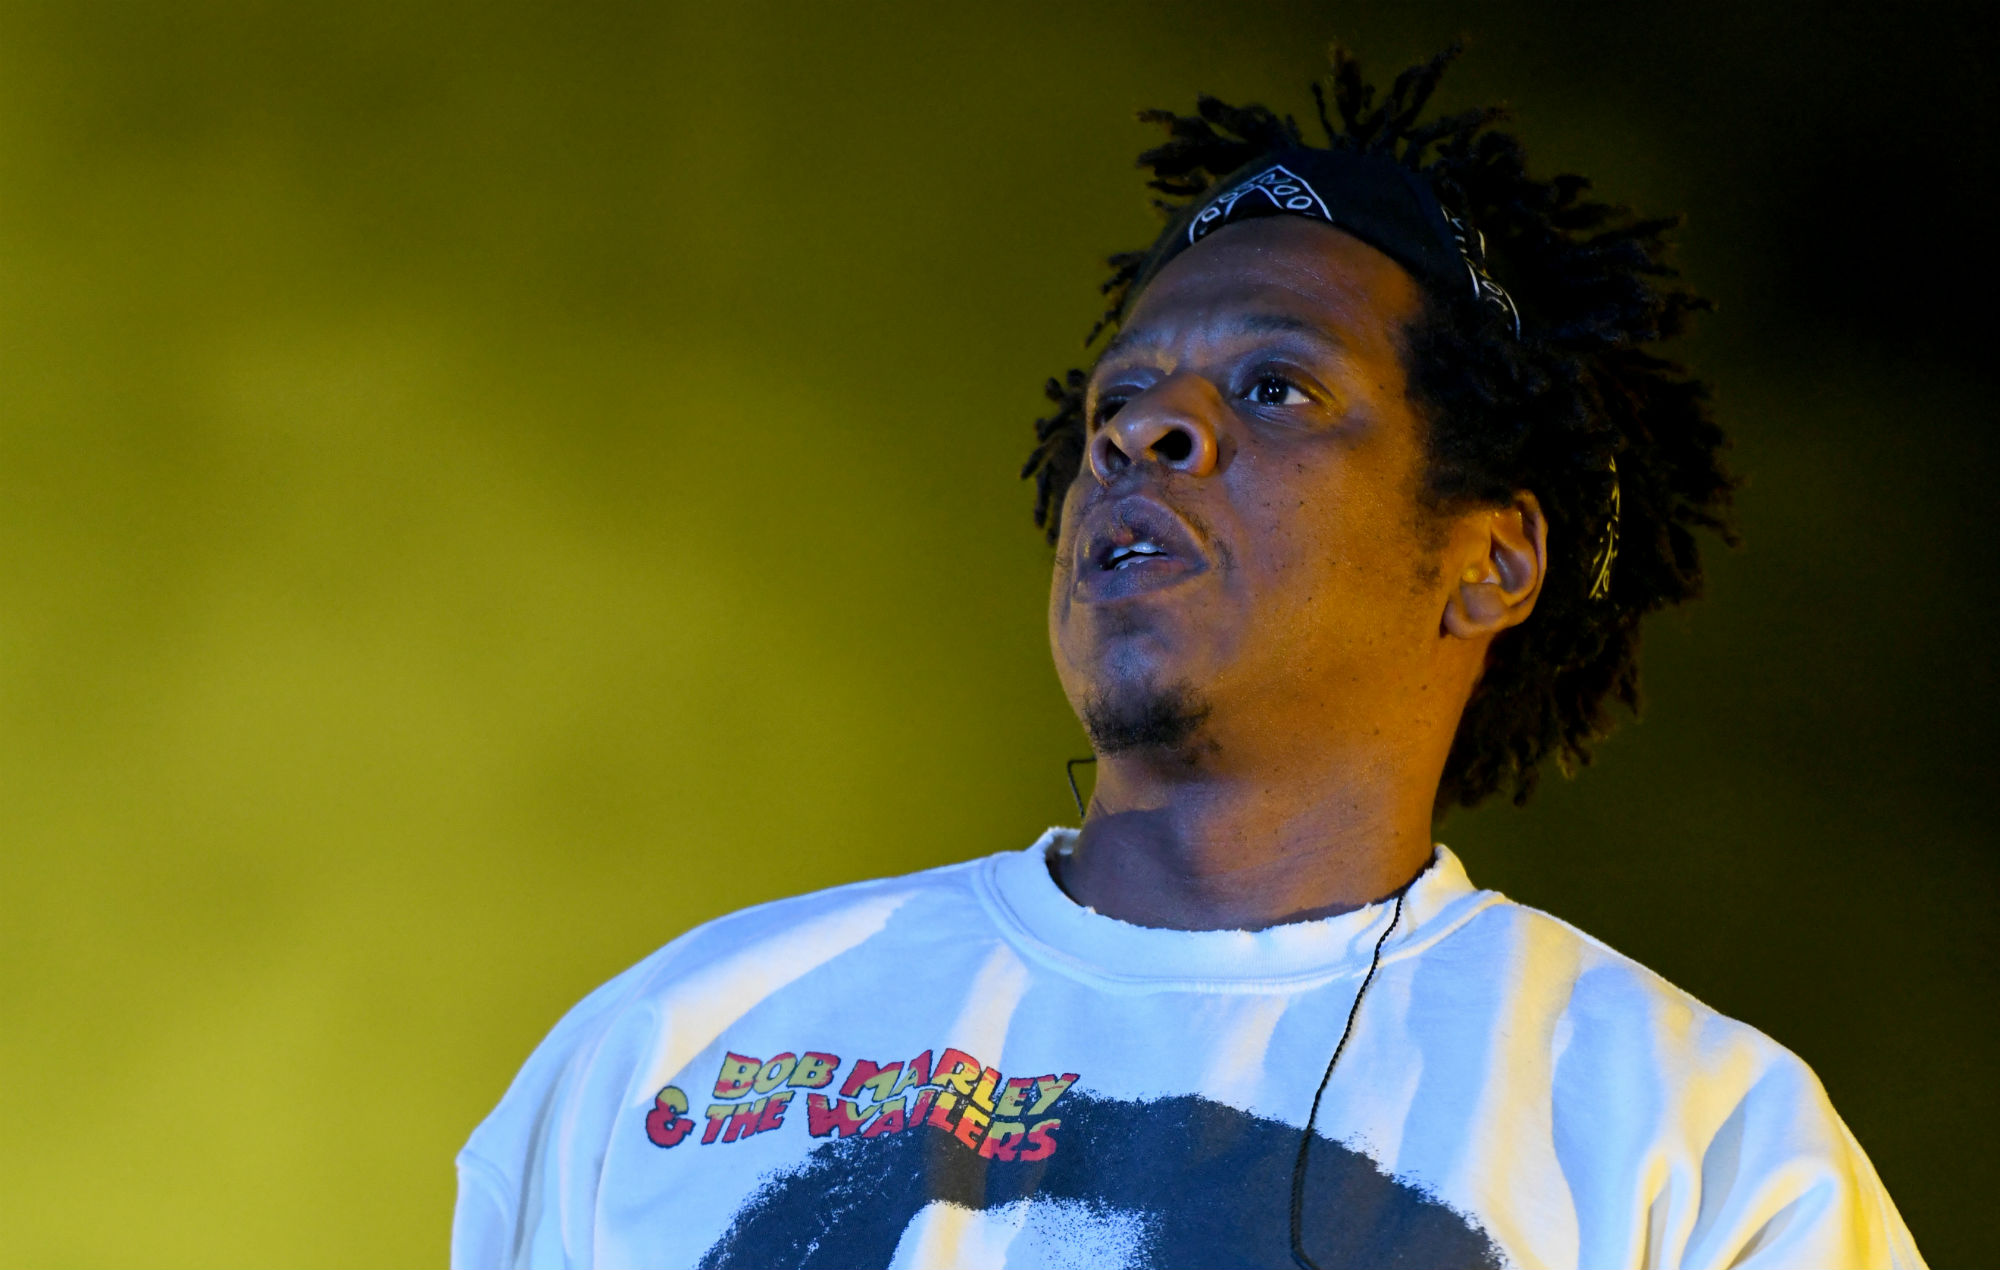 Un fan de Jay-Z fue arrestado después de colarse en un vuelo para intentar encontrarse con el rapero